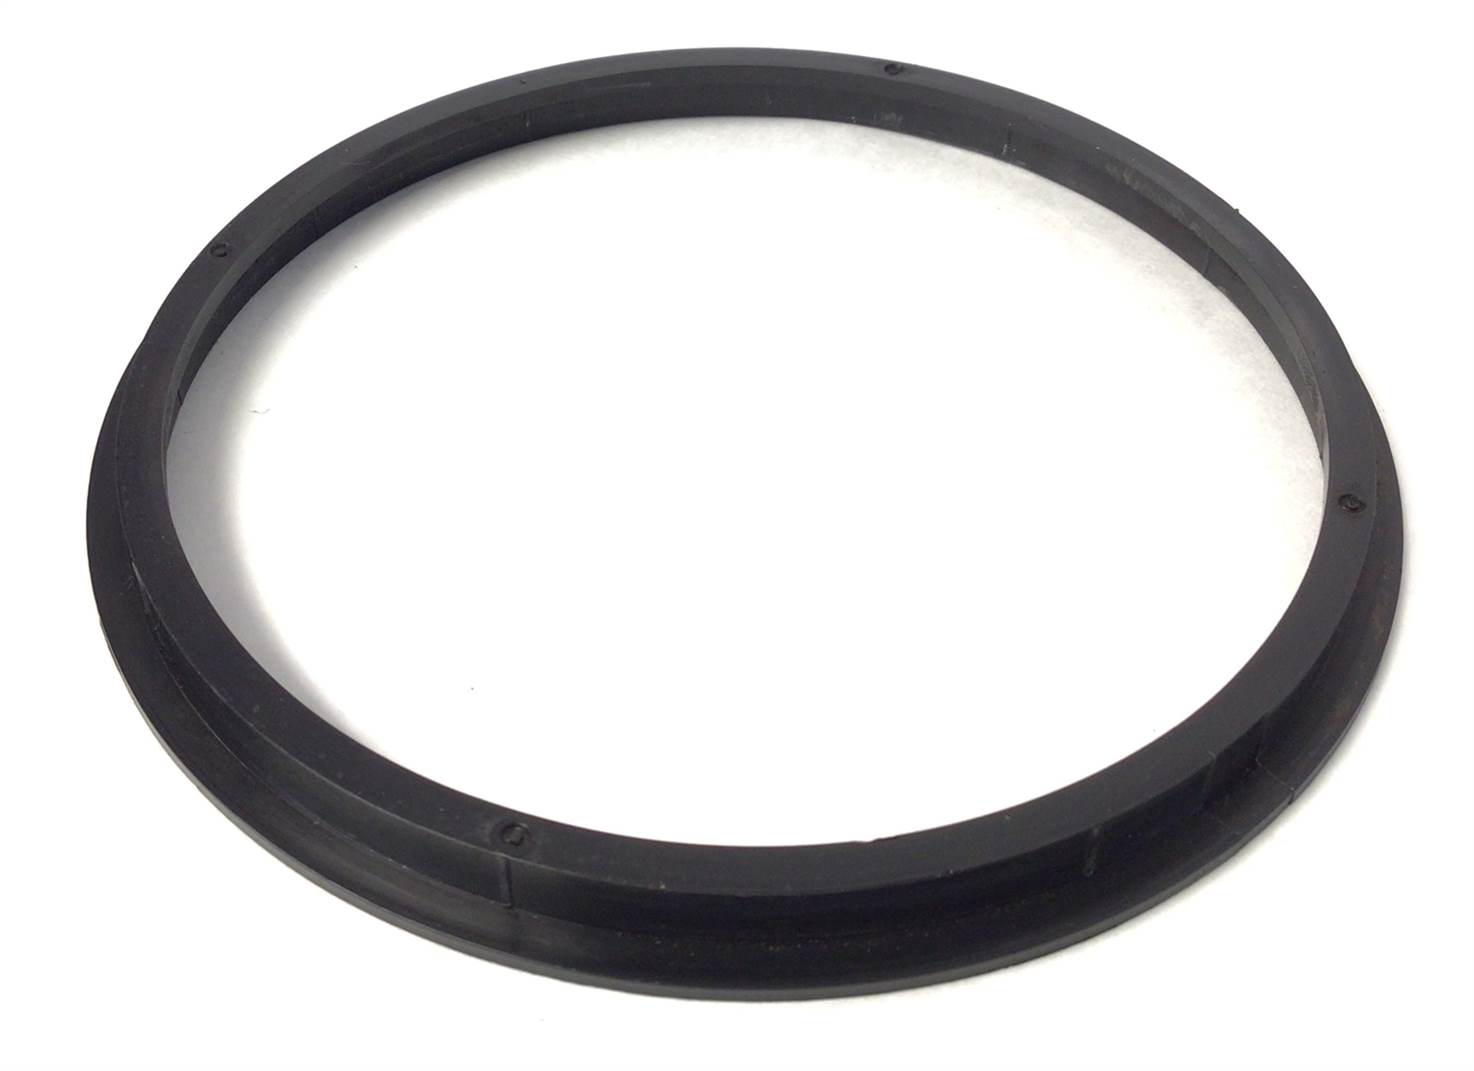 McMillan Motor Body Gasket Ring (Used)